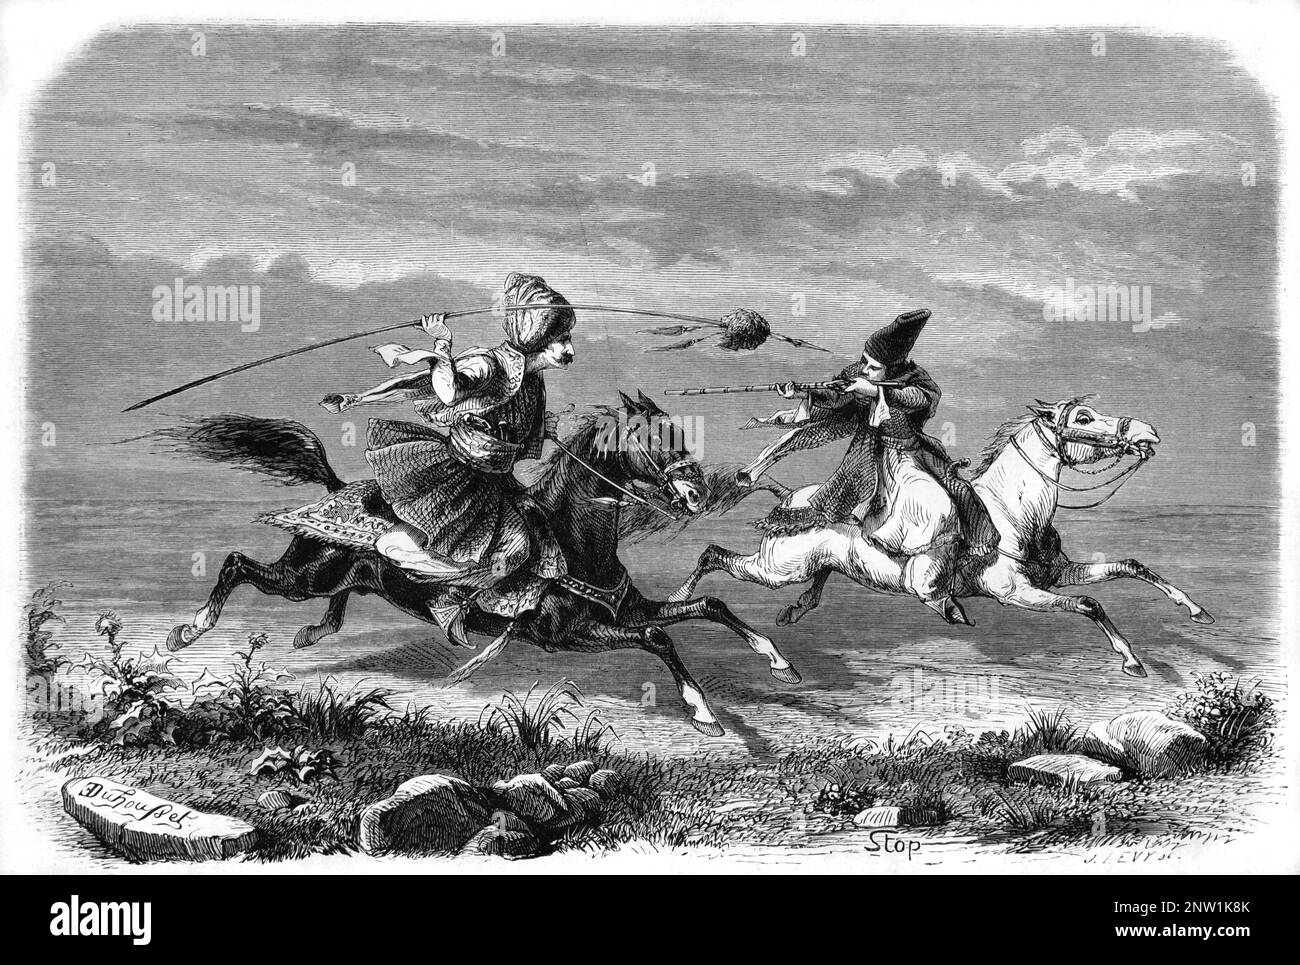 Perse ou iranien Horseman et kurde Horse Rider joutant pendant la chasse, la confrontation ou la guerre de Cavalry Perse ou Iran Moyen-Orient. Gravure ancienne ou illustration 1862 Banque D'Images